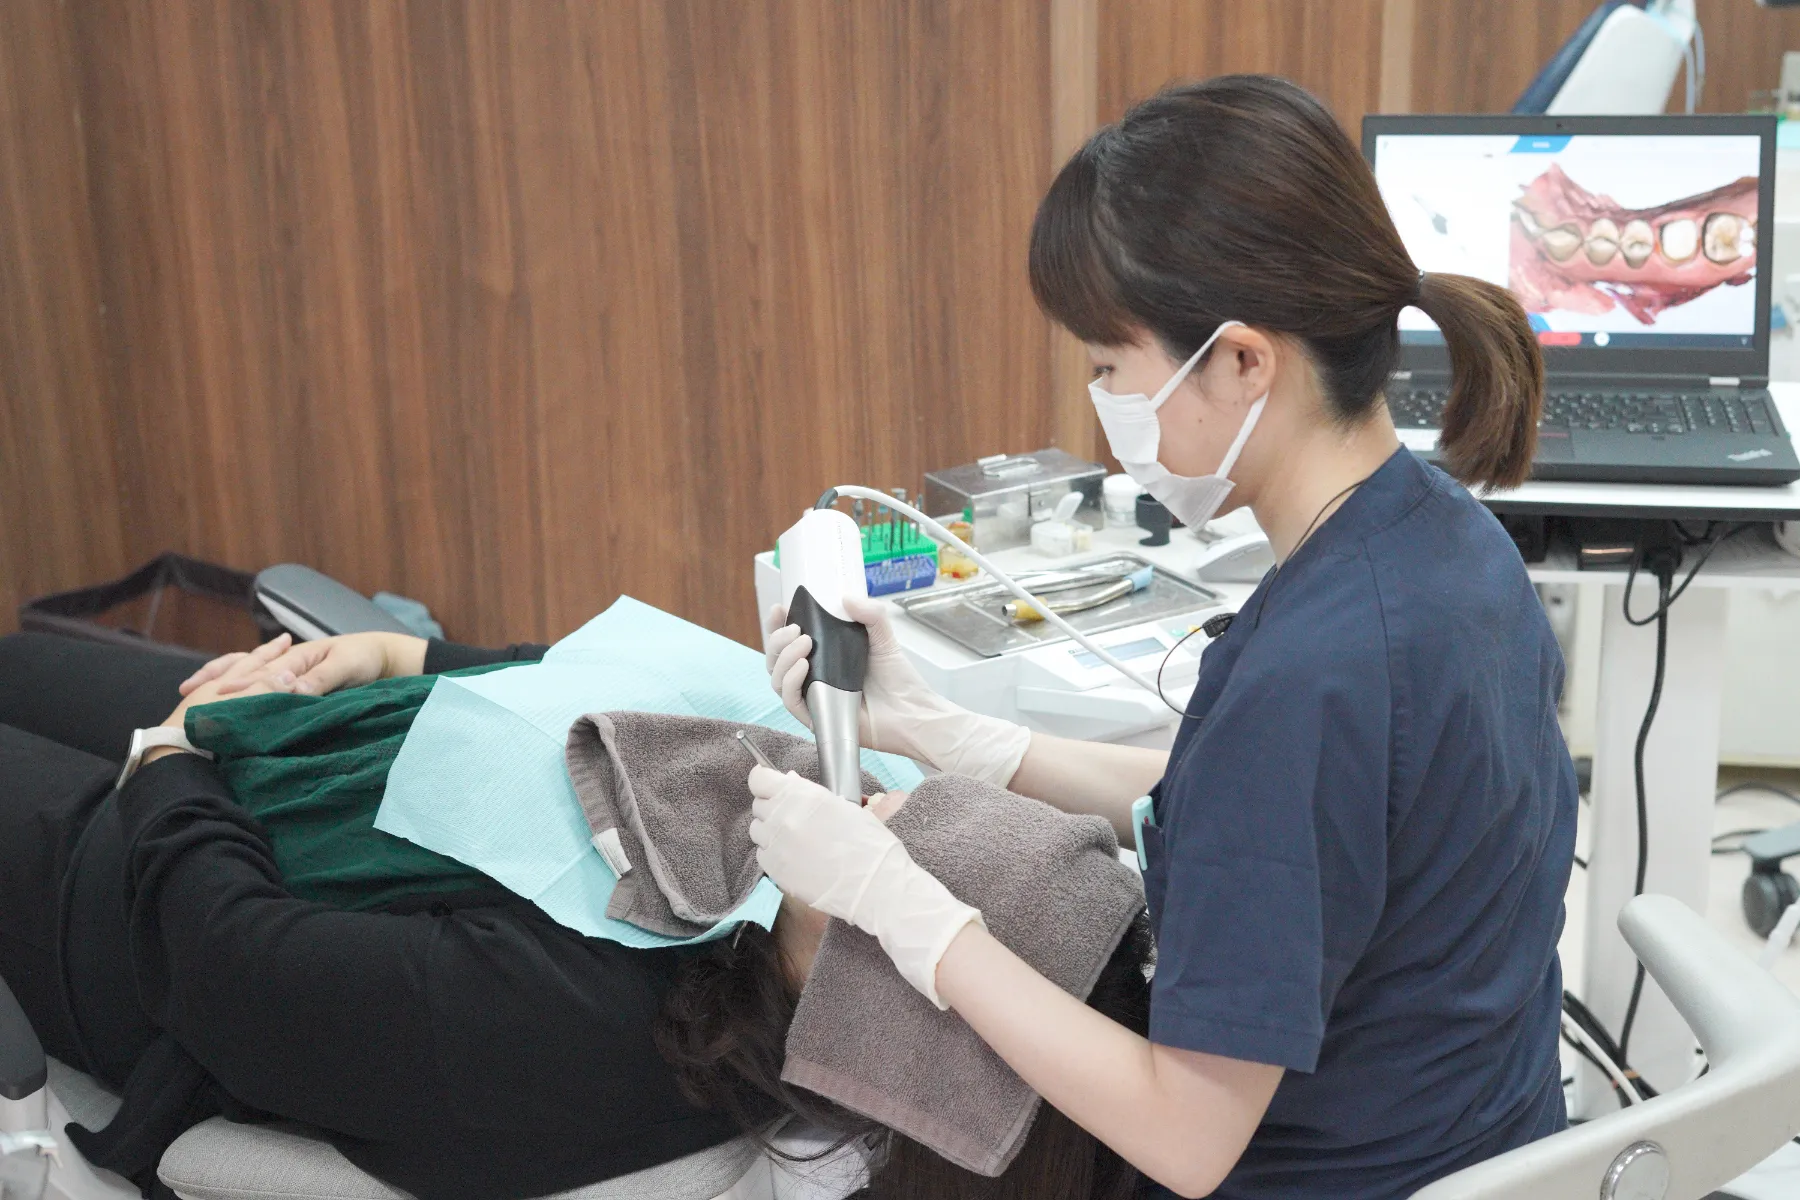 大宮駅の歯医者「アーバン歯科・矯正歯科 大宮ラクーン院」は審美歯科で歯の持つ本来の美しさへと導きます